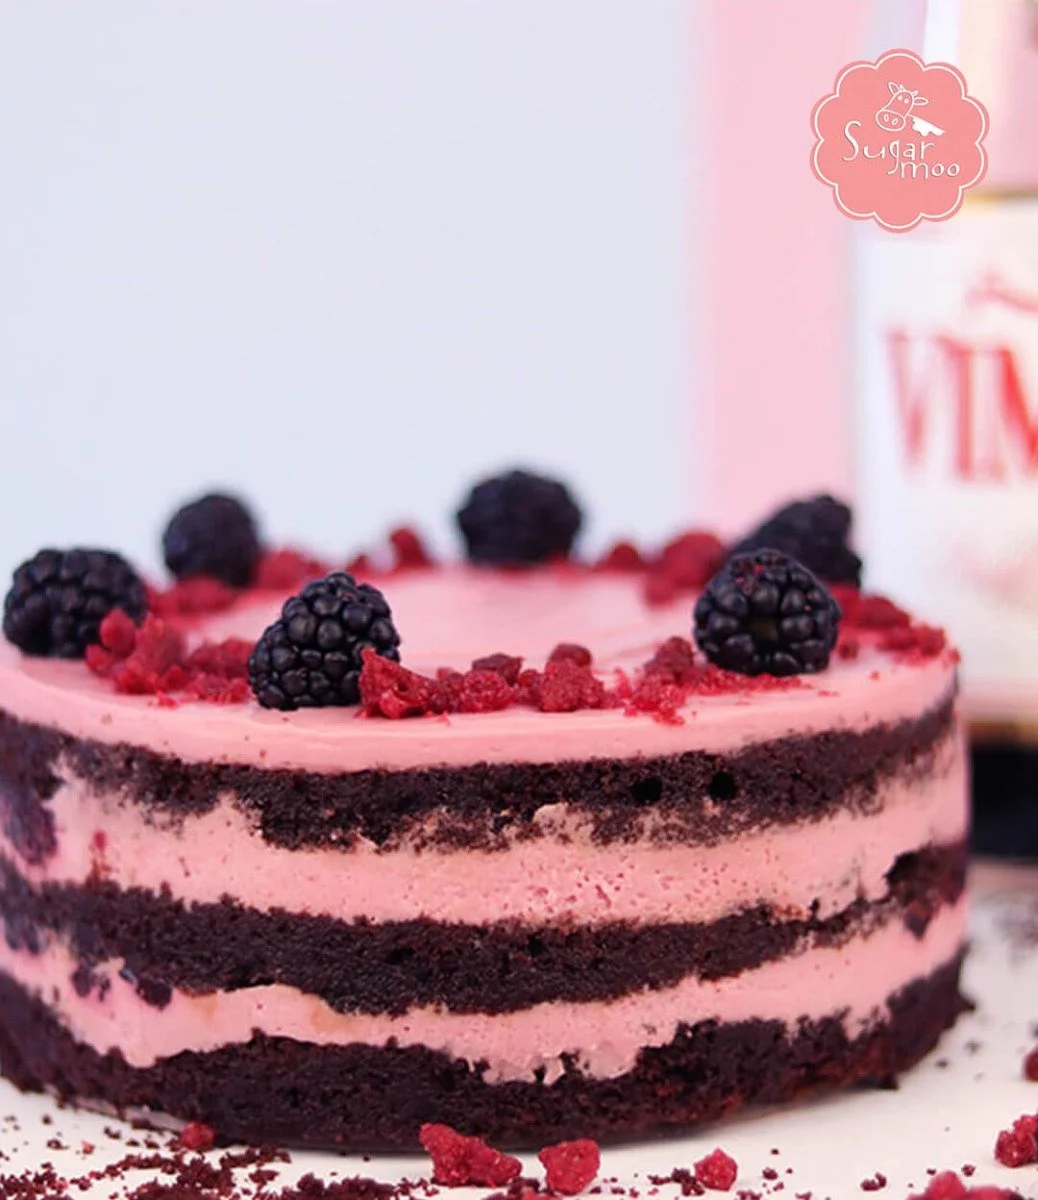 Vimto Toot Cake by SugarMoo